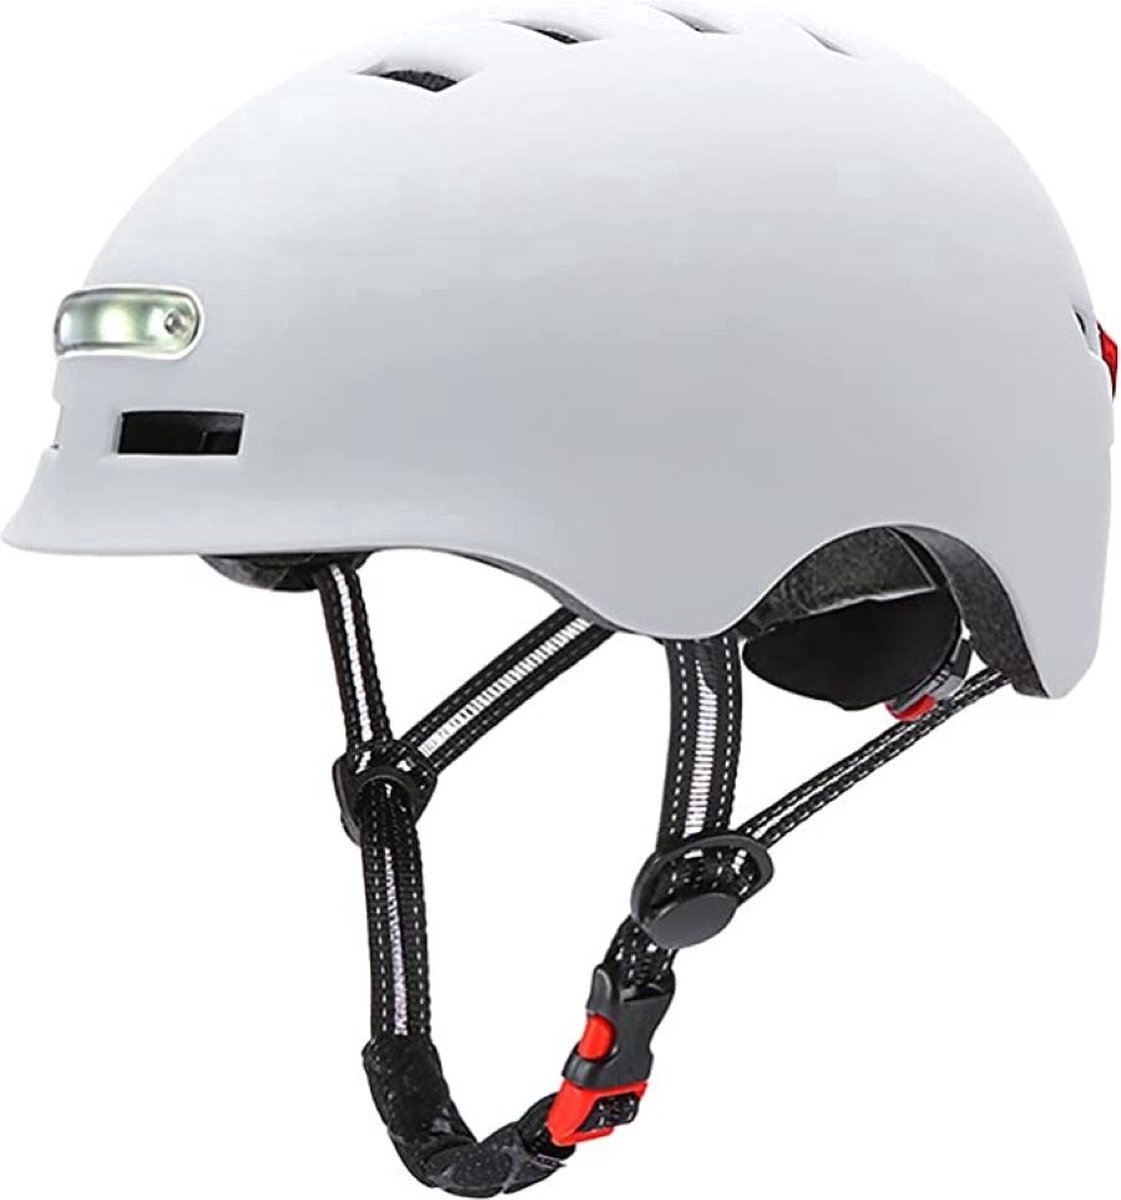 Fietshelm voor volwassenen met LED-verlichting met voor- en achterlicht|Maat L 58-61cm|SMART helm| Fiets, Step|